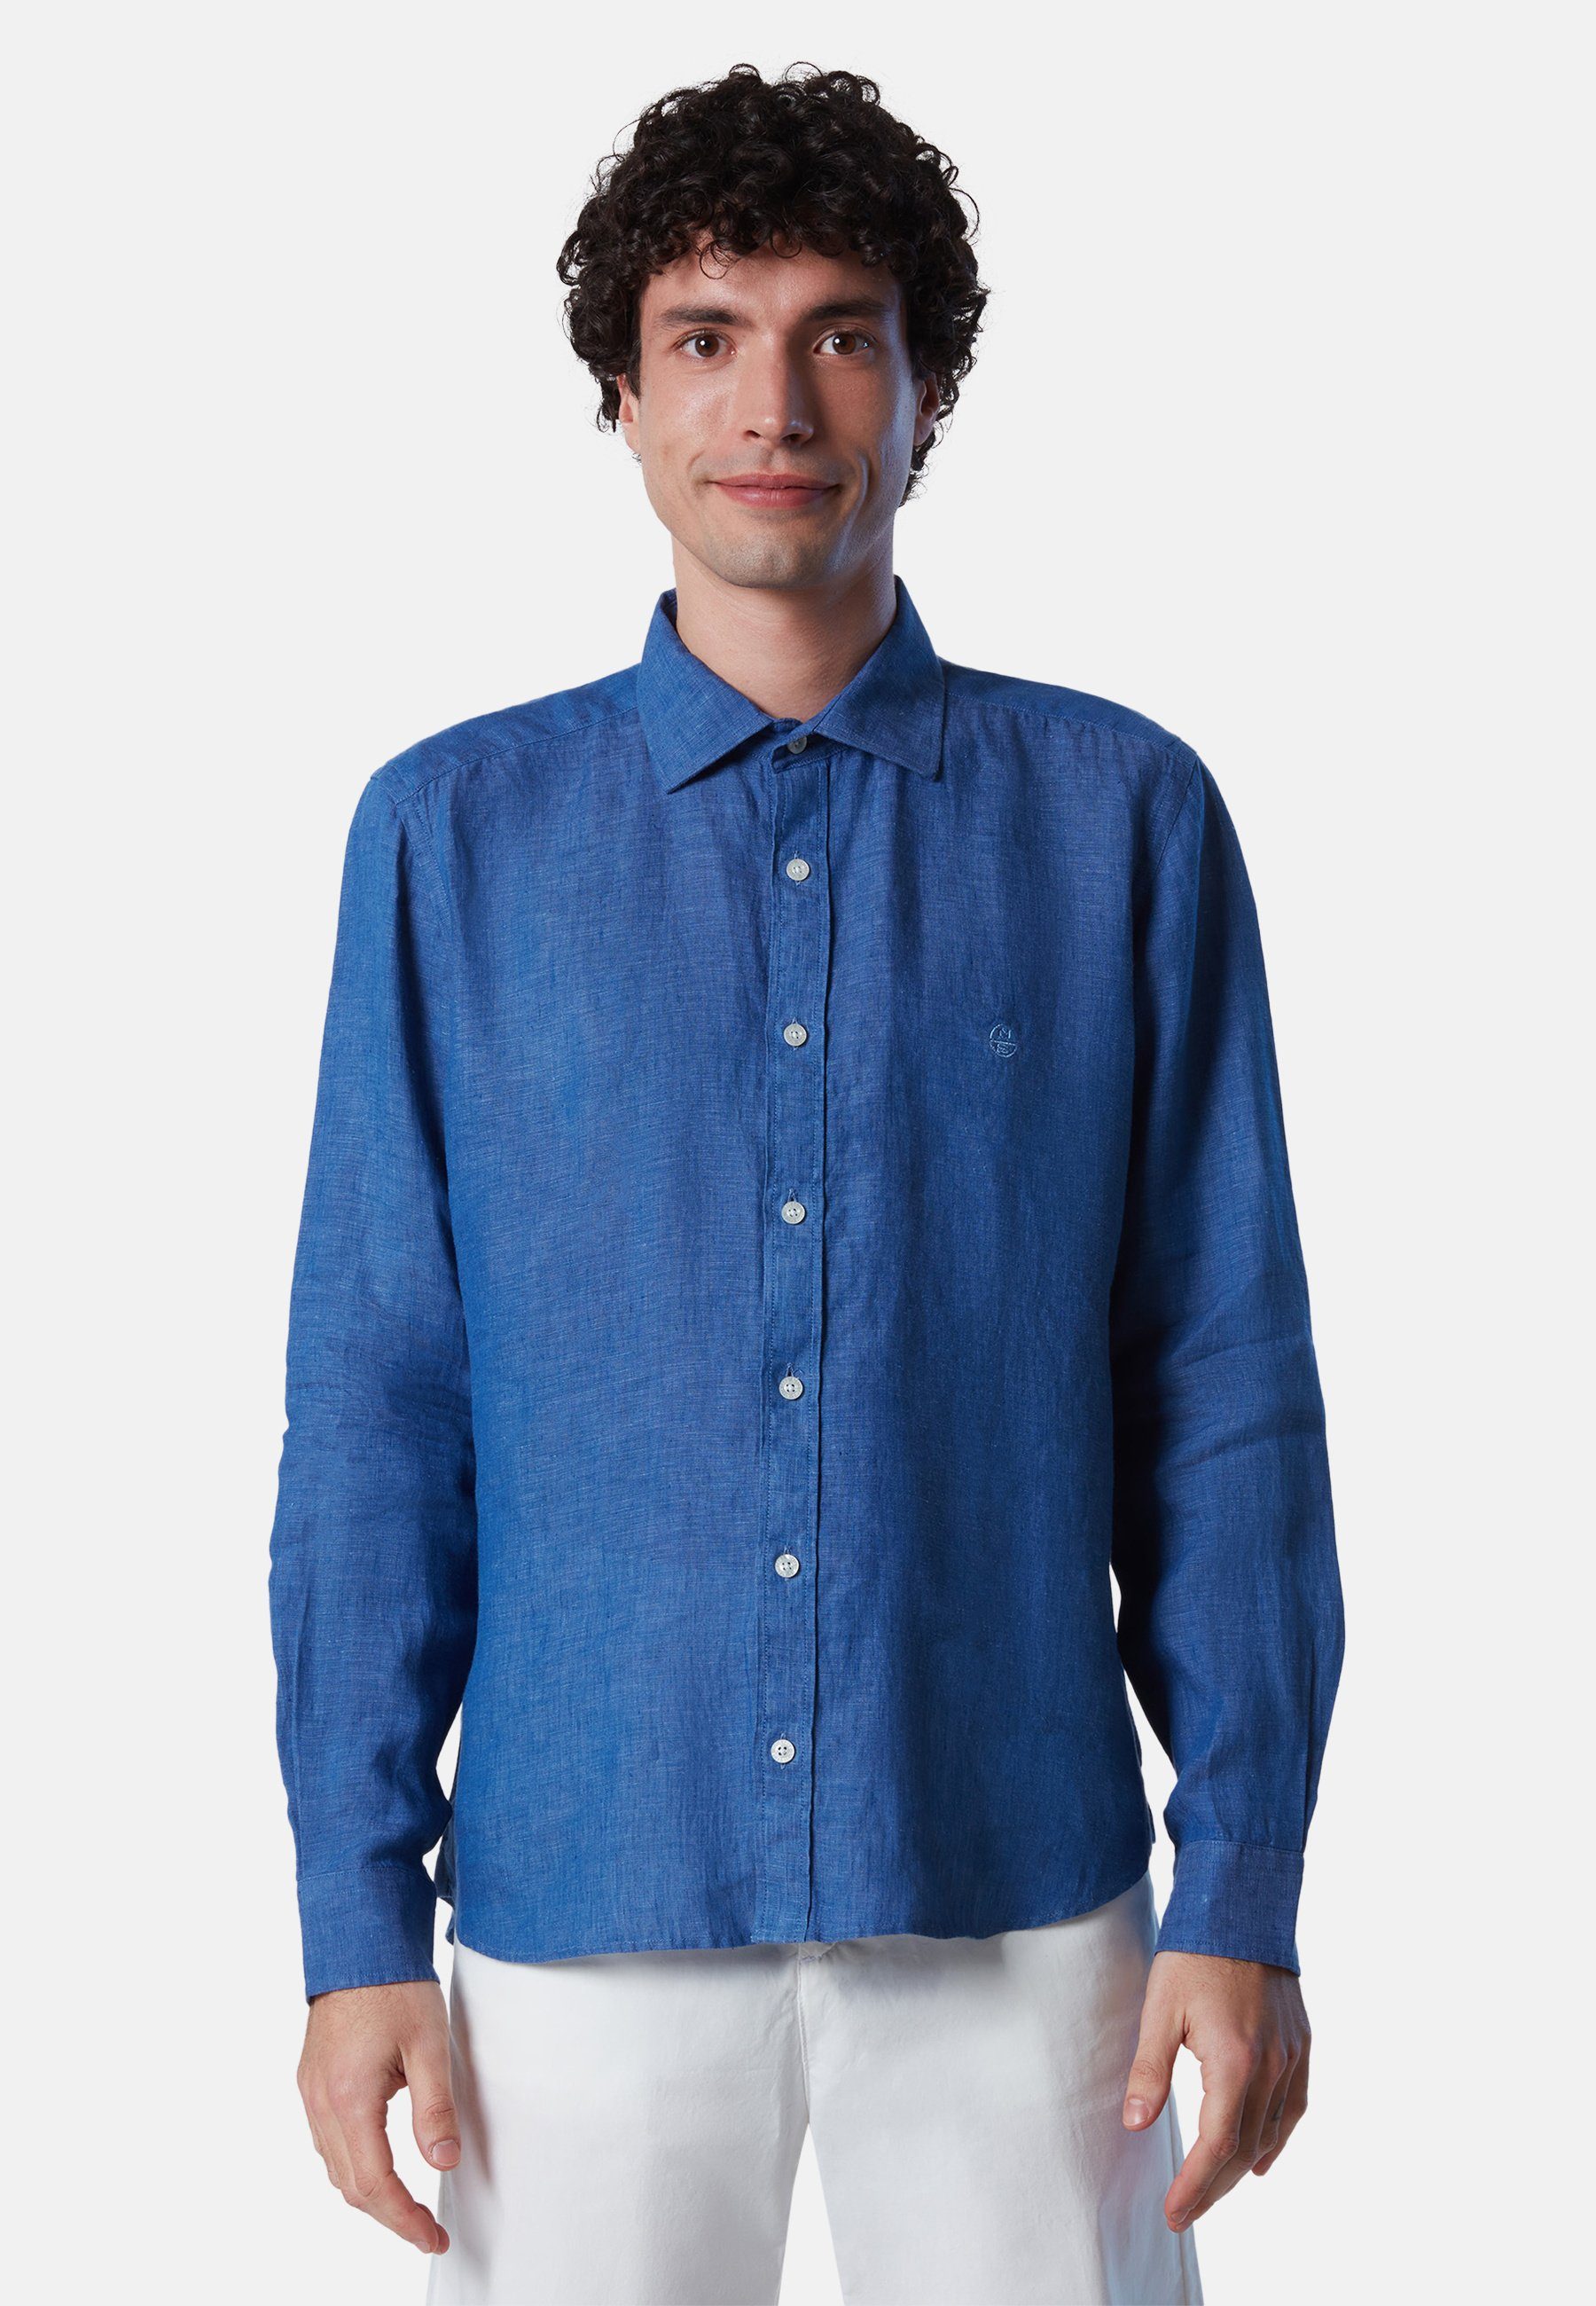 North Sonstiges BLUE T-Shirt DARK Leinen-Shirt Sails